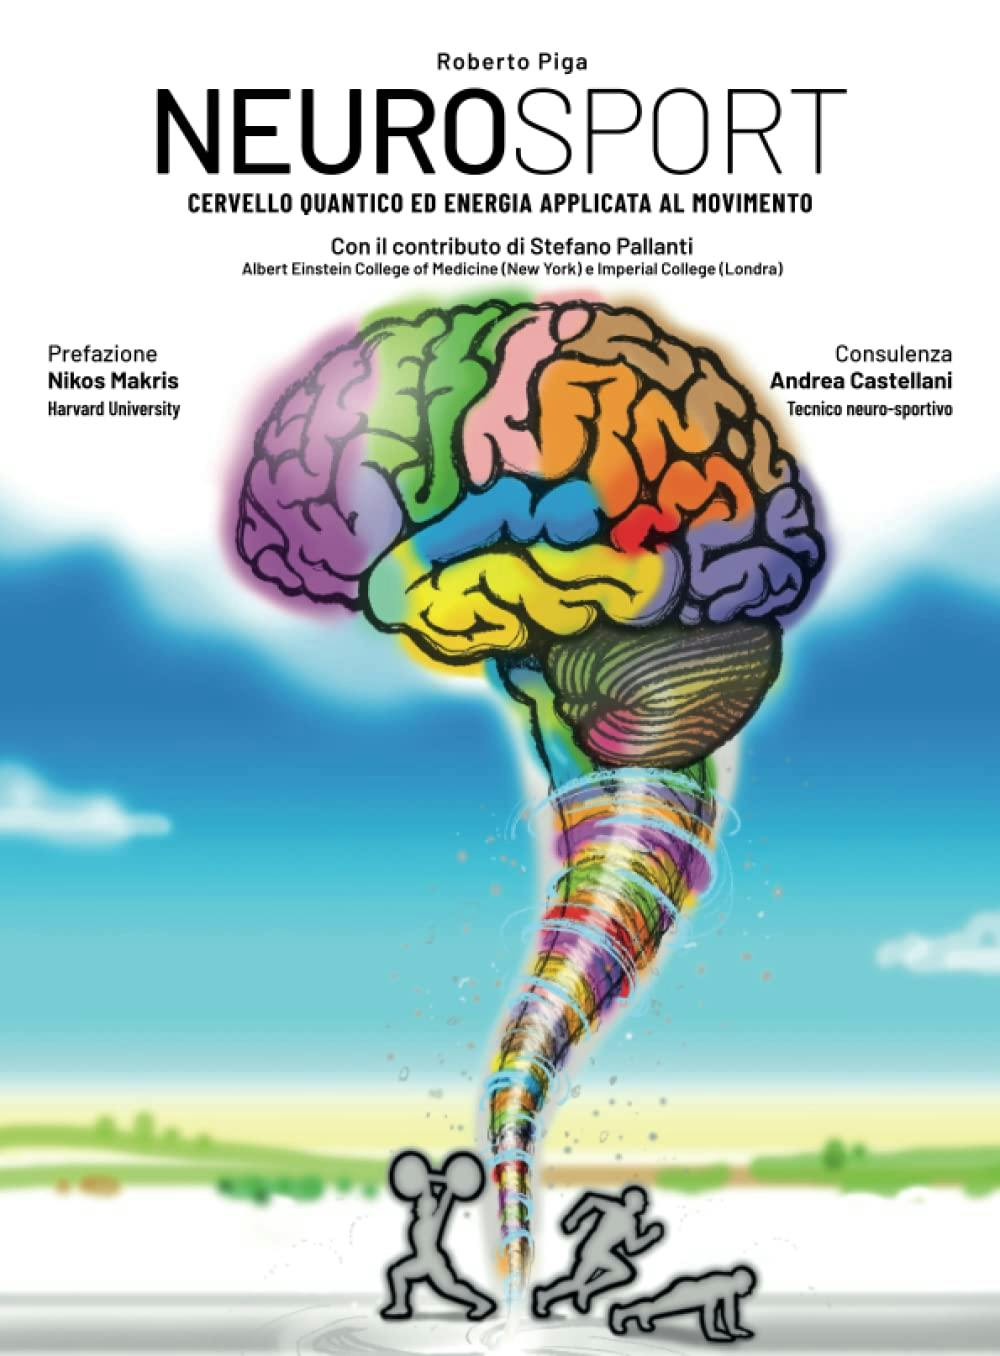 Copertina del libro "Neurosport: Cervello quantico ed energia applicata al movimento" di Roberto Piga, con il contributo di Stefano Pallanti